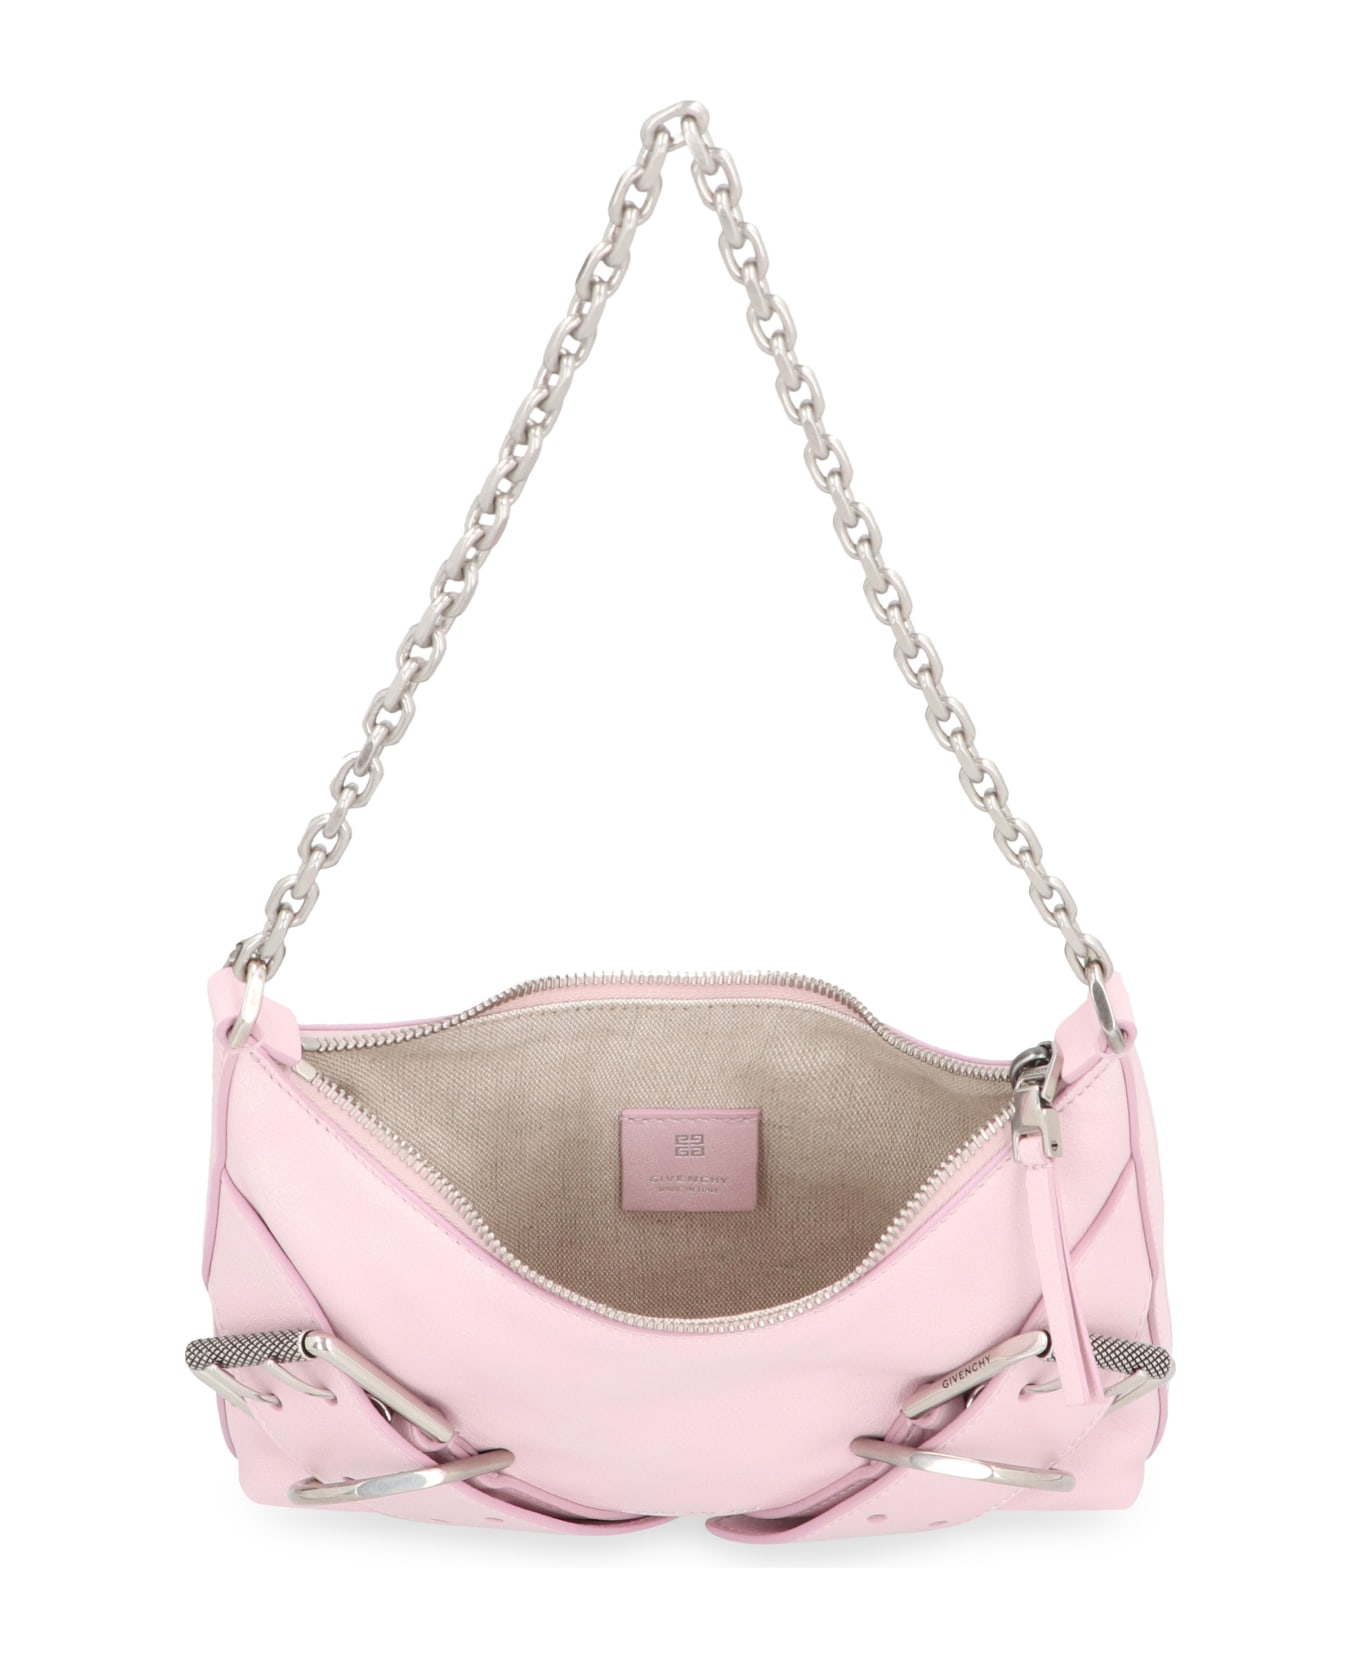 Givenchy Voyou Leather Shoulder Bag - Pink トートバッグ